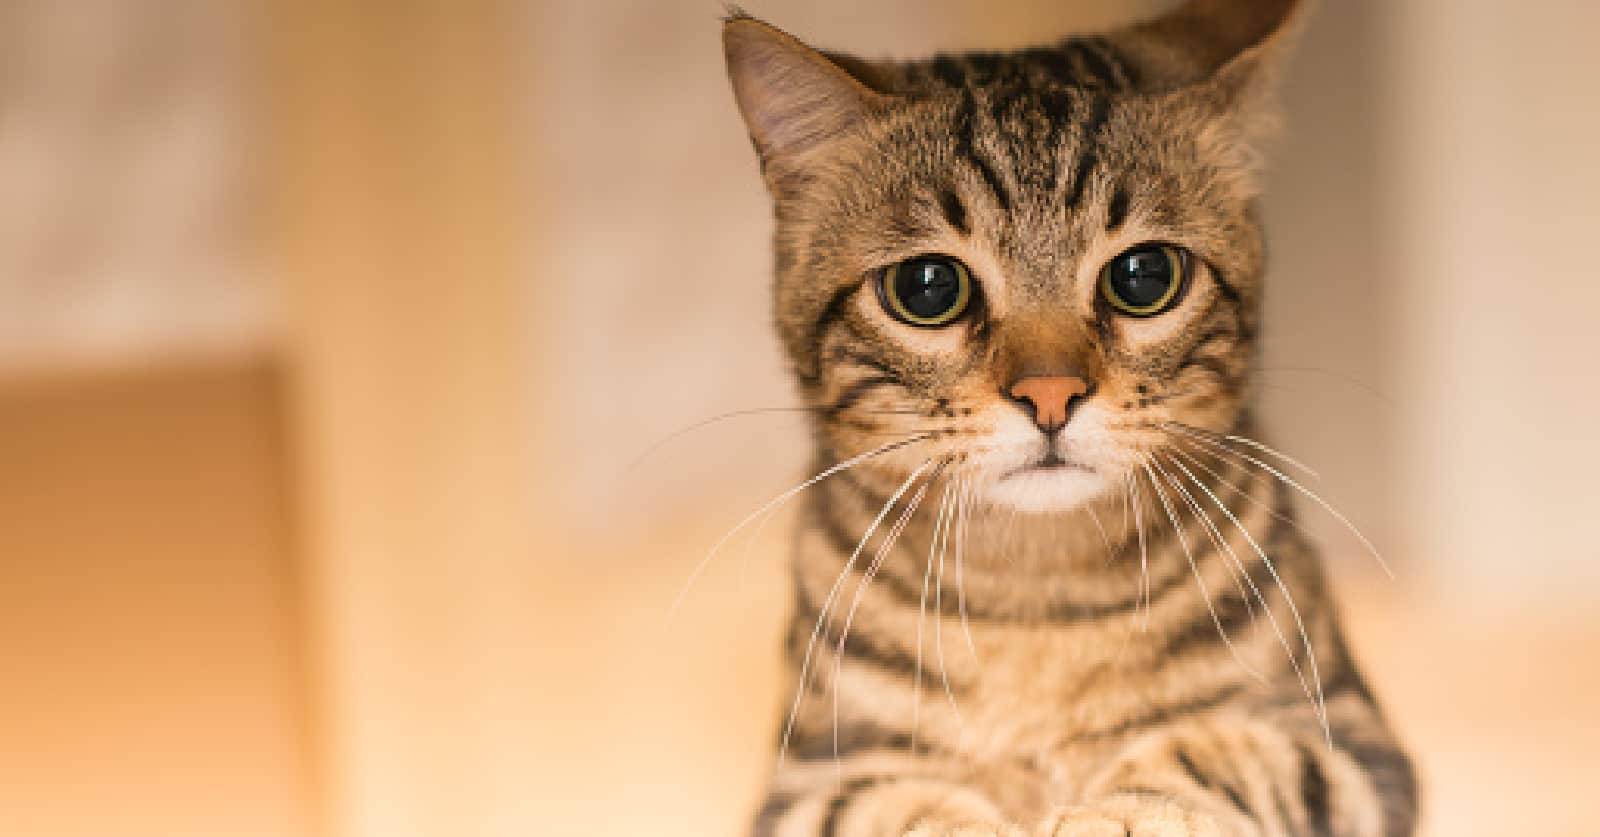 Can Cats Sense Sadness?